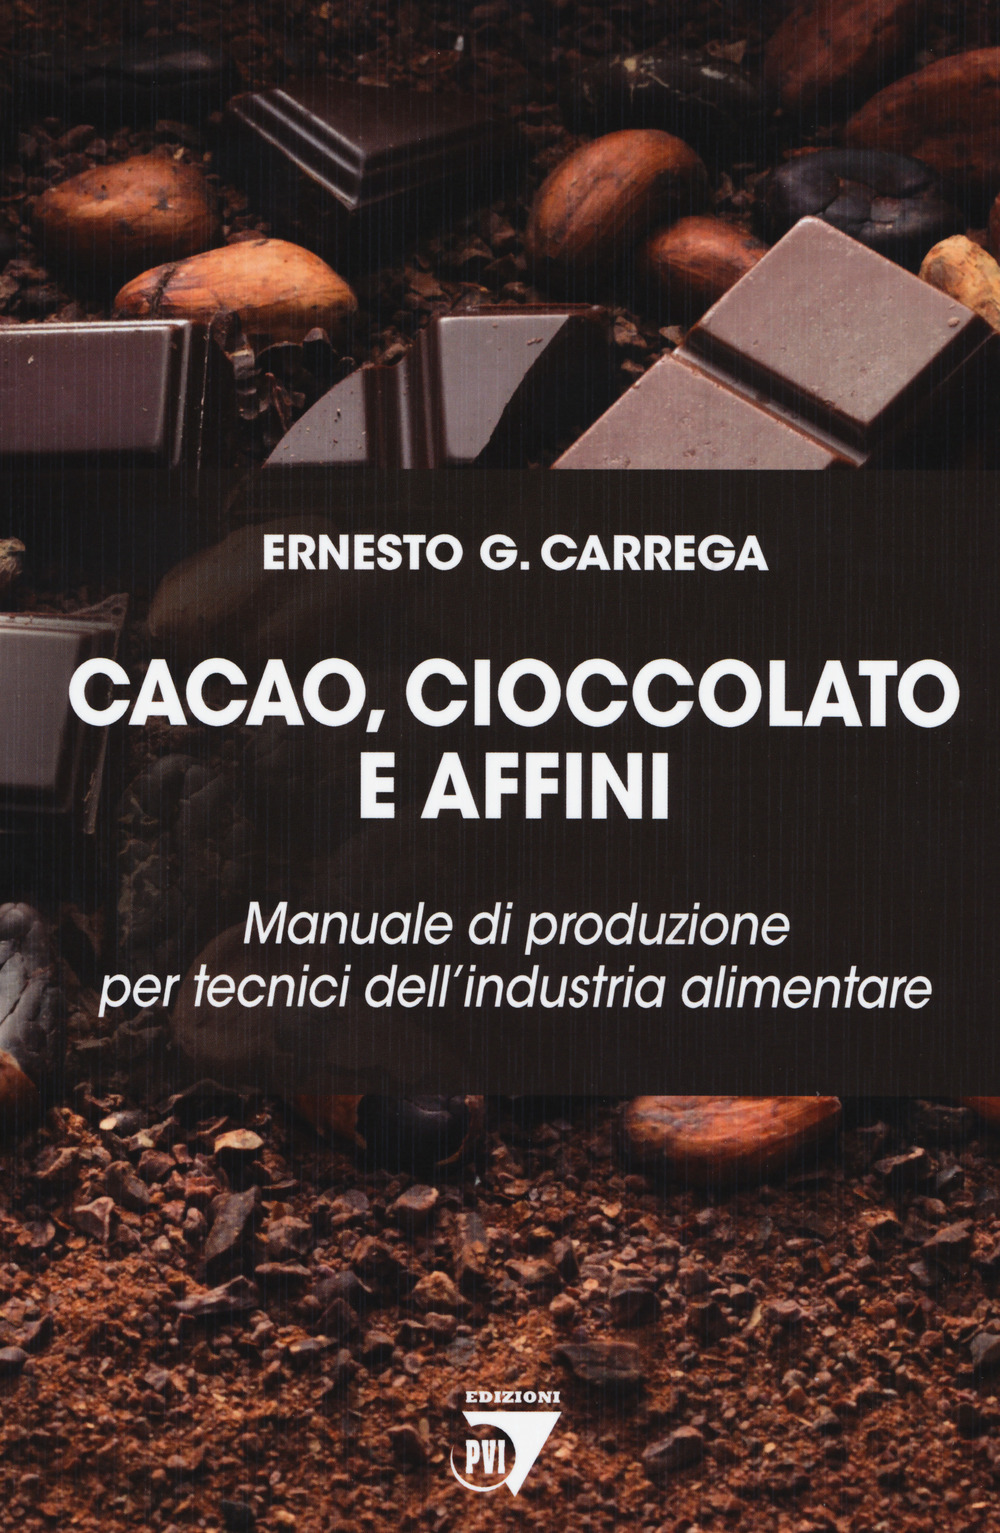 Image of Cacao, cioccolato e affini. Manuale di produzione per tecnici dell'industria alimentare